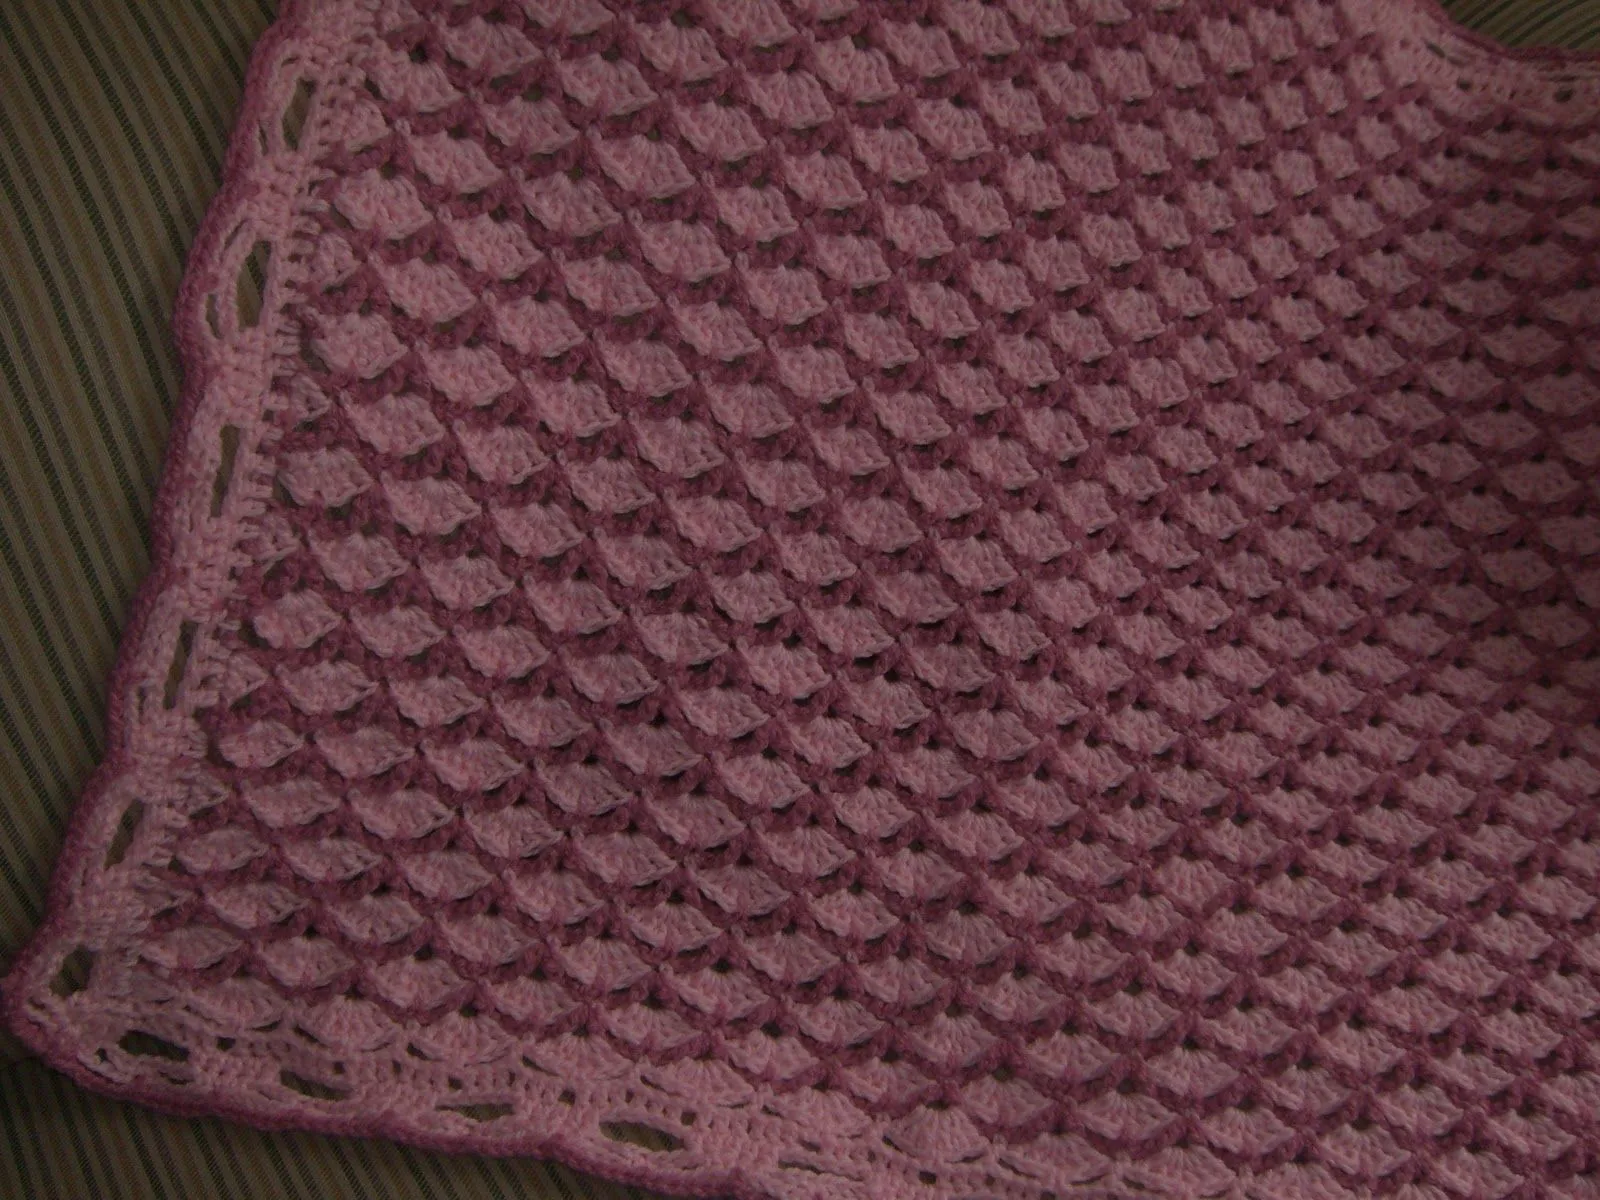 Crochet y dos agujas AracneAtenea: Una bella mantita para Bebe